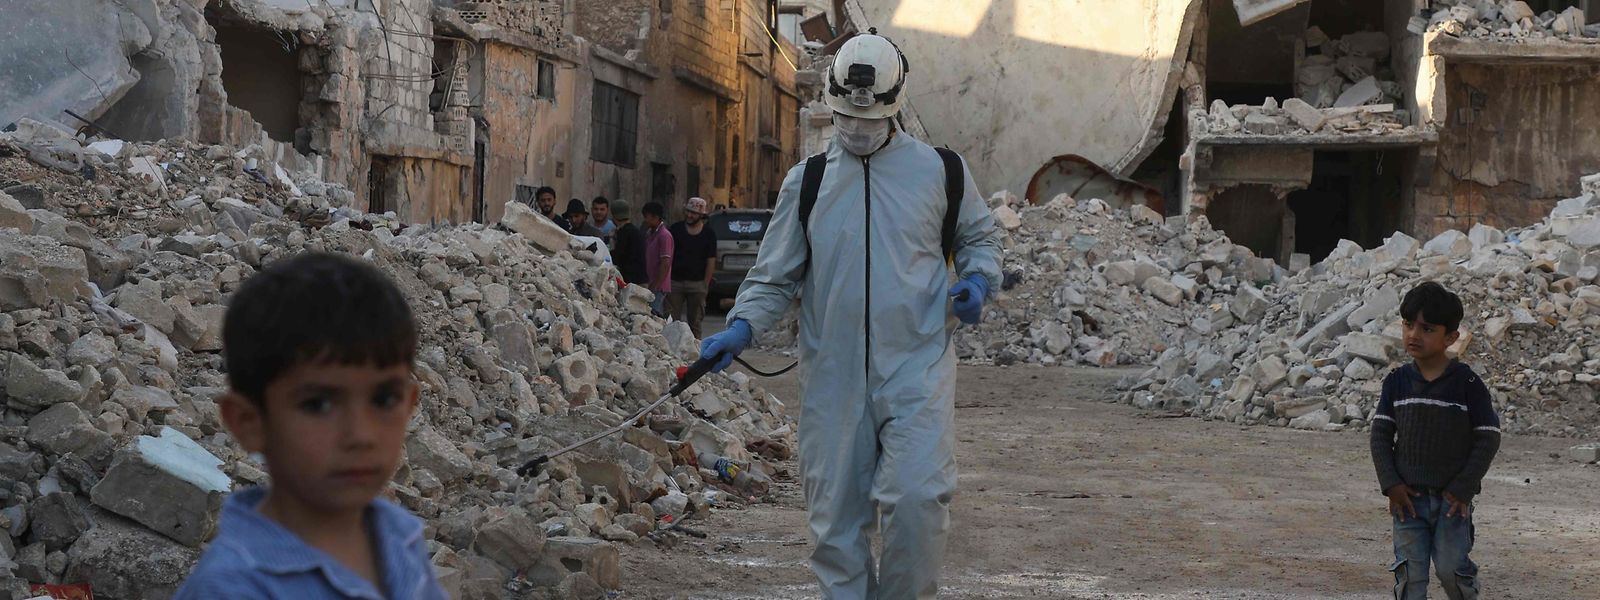 Ein Mitglied des Syrischen Zivilschutzes desinfiziert eine zerstörte Nachbarschaft in Atareb.